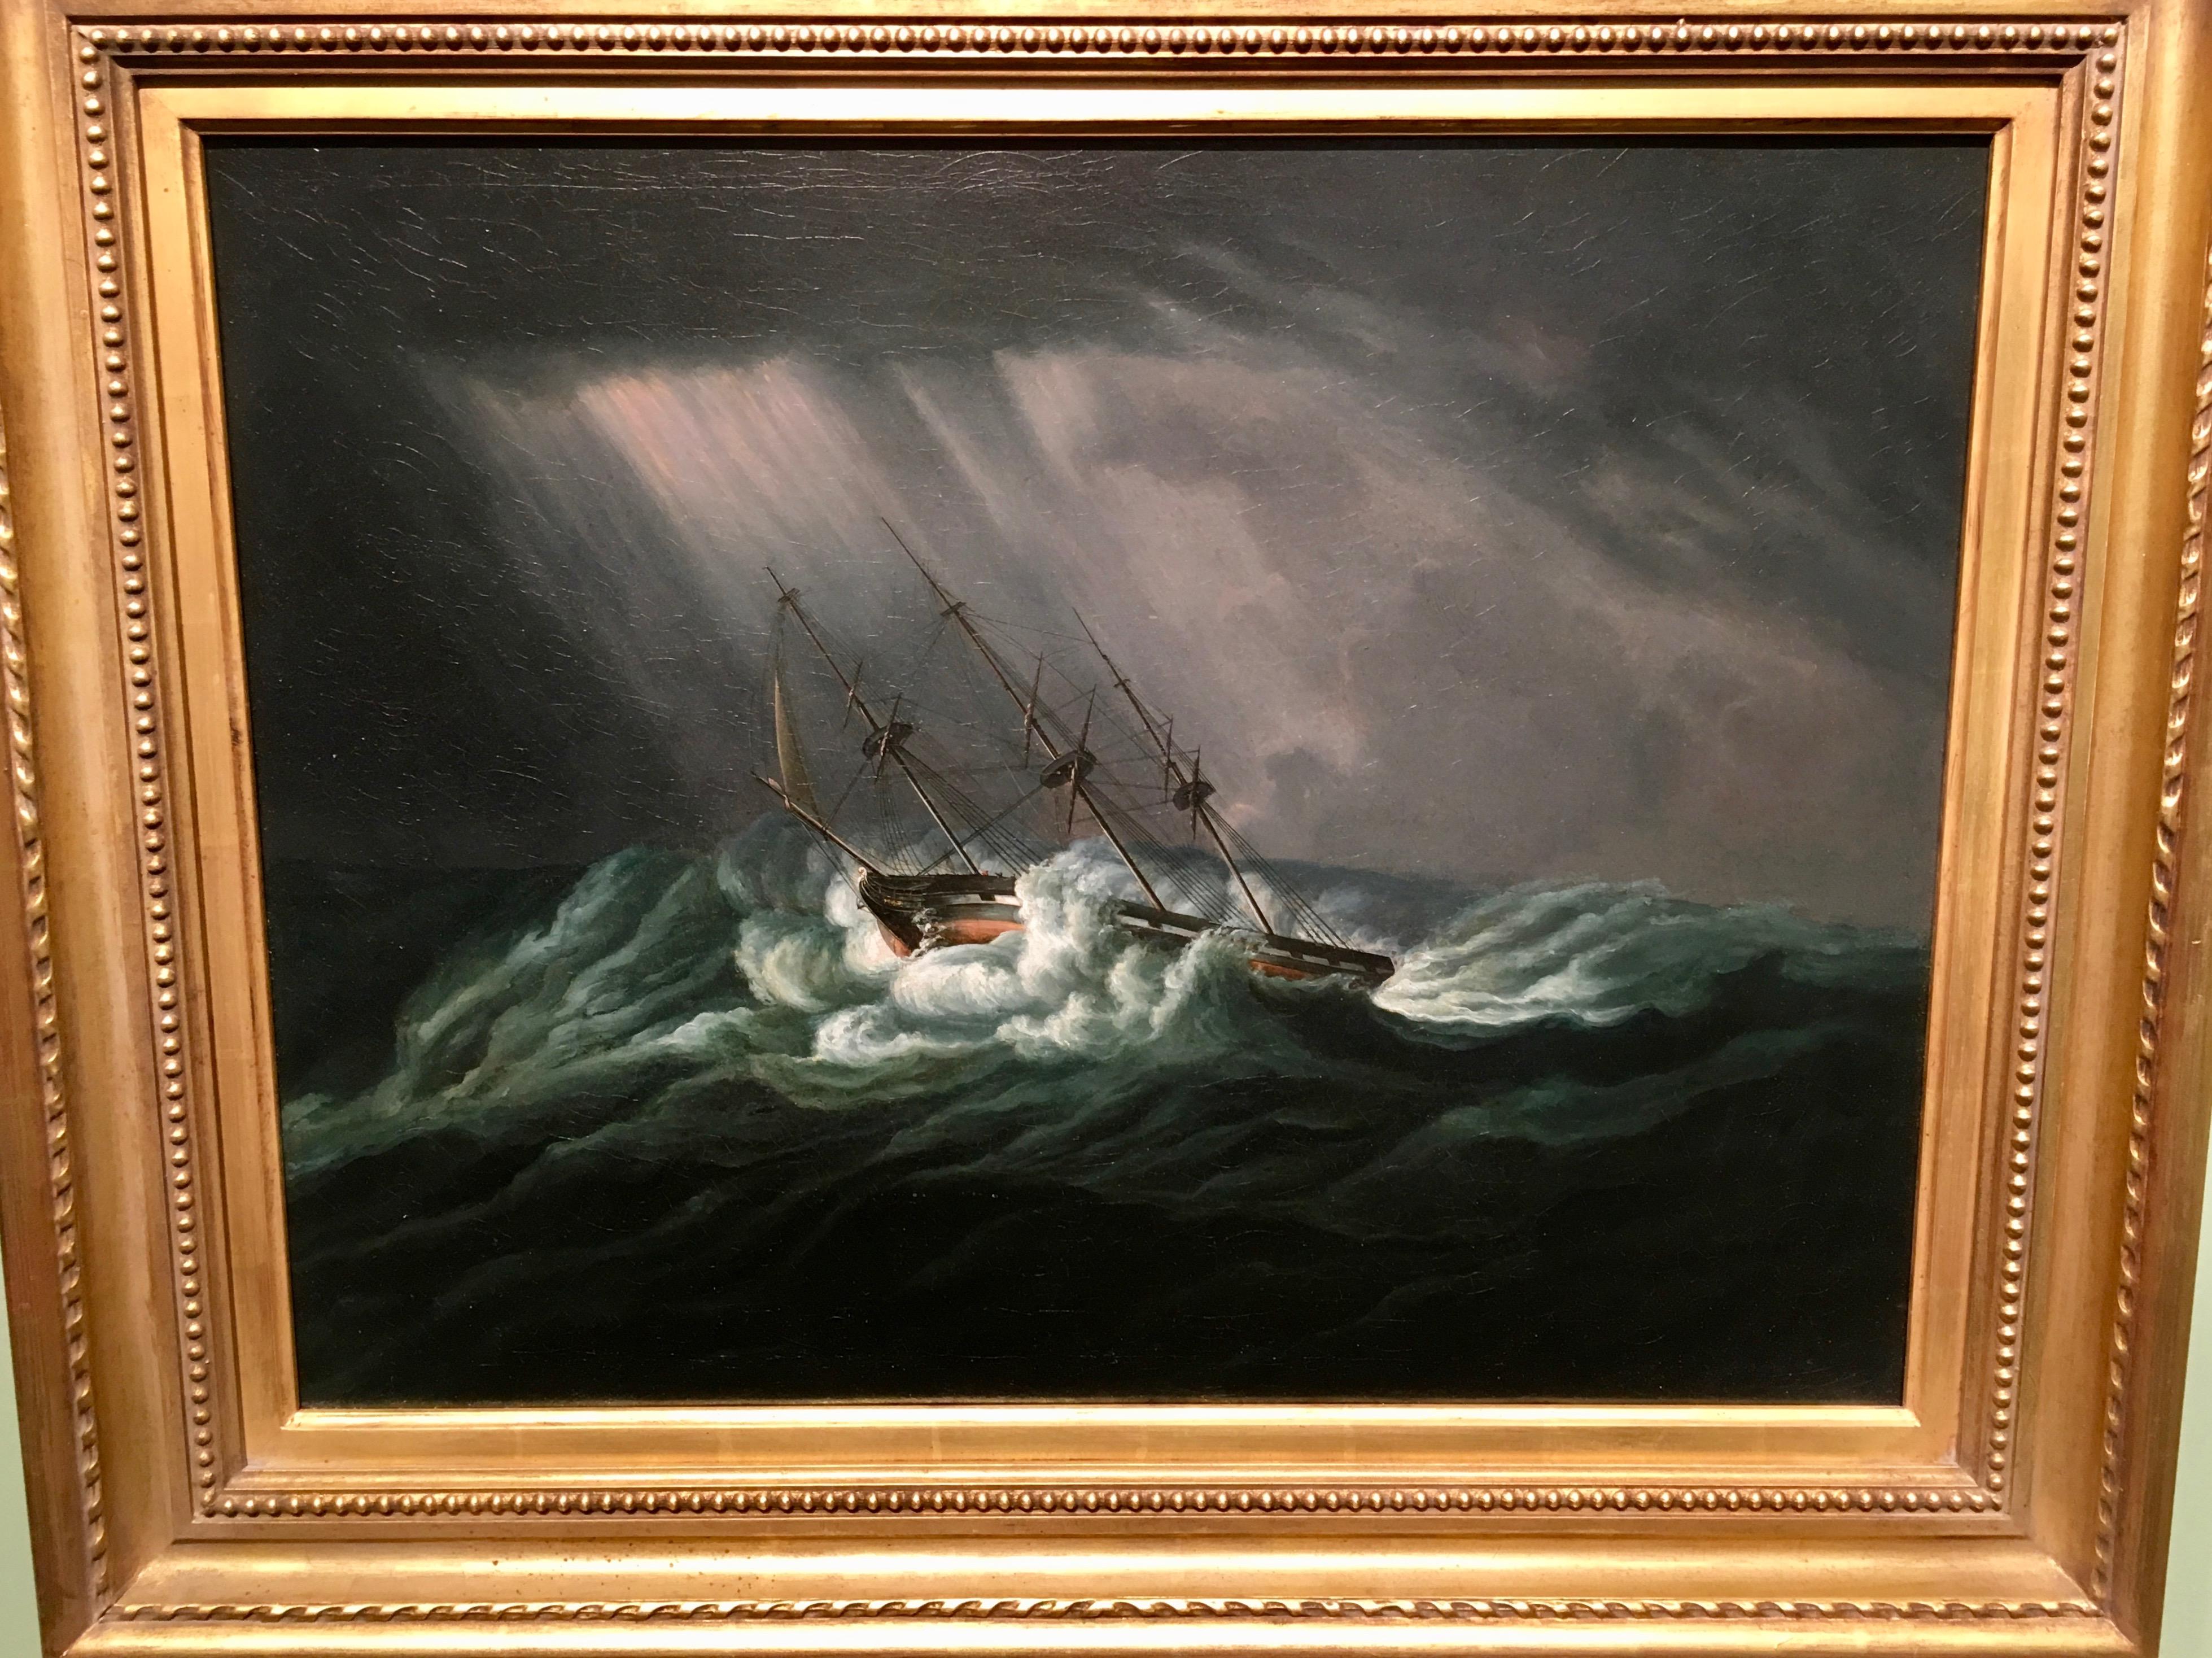 Landscape Painting James Edward Buttersworth - marine américaine ou anglaise, navire dans une mer rugueuse la nuit avec des éclairs